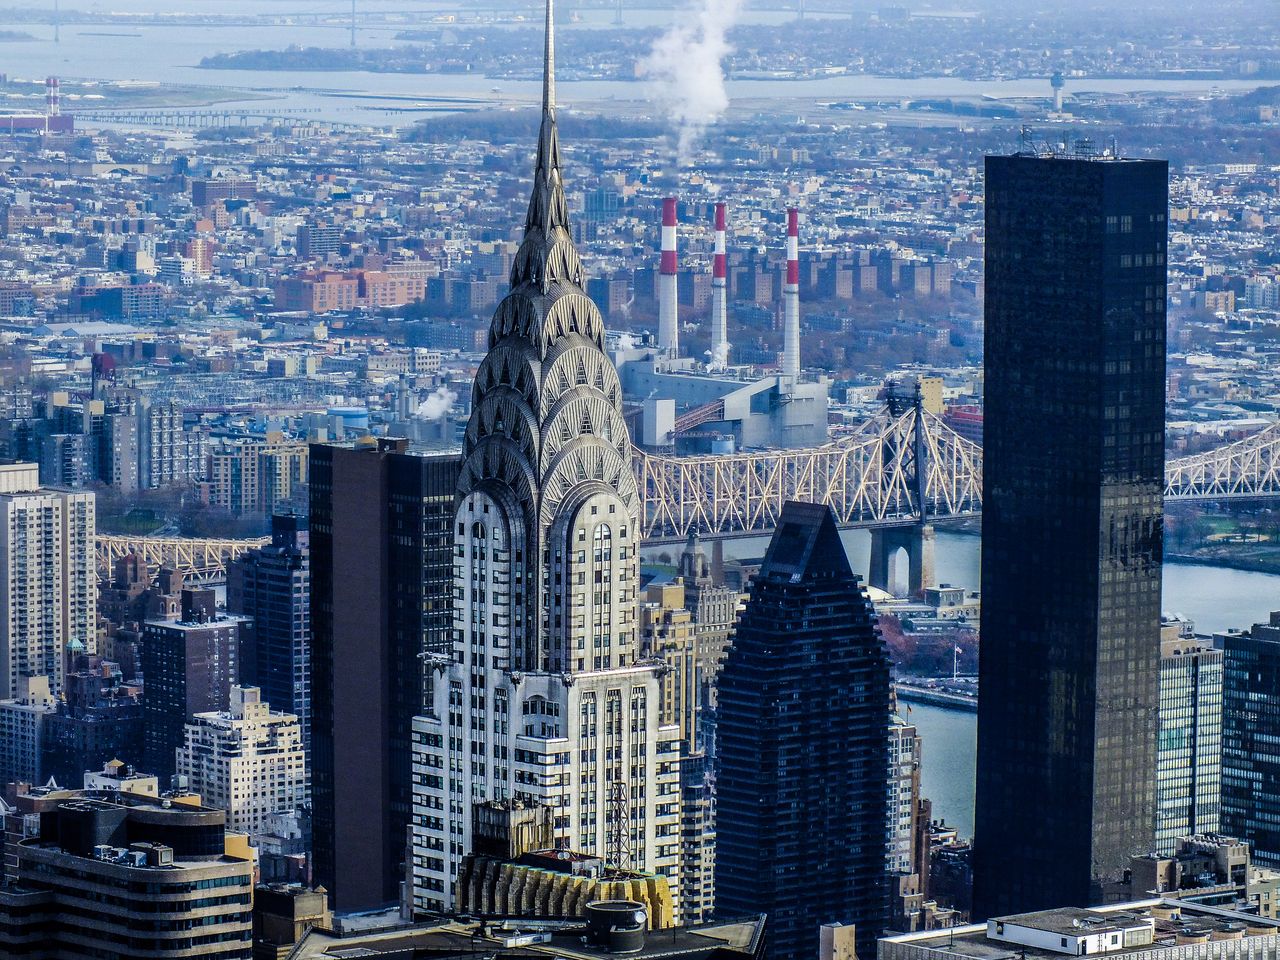 Chrysler Building - ikona i symbol Nowego Jorku. Jego budowa to wyścig o miano najwyższego budynku na świecie